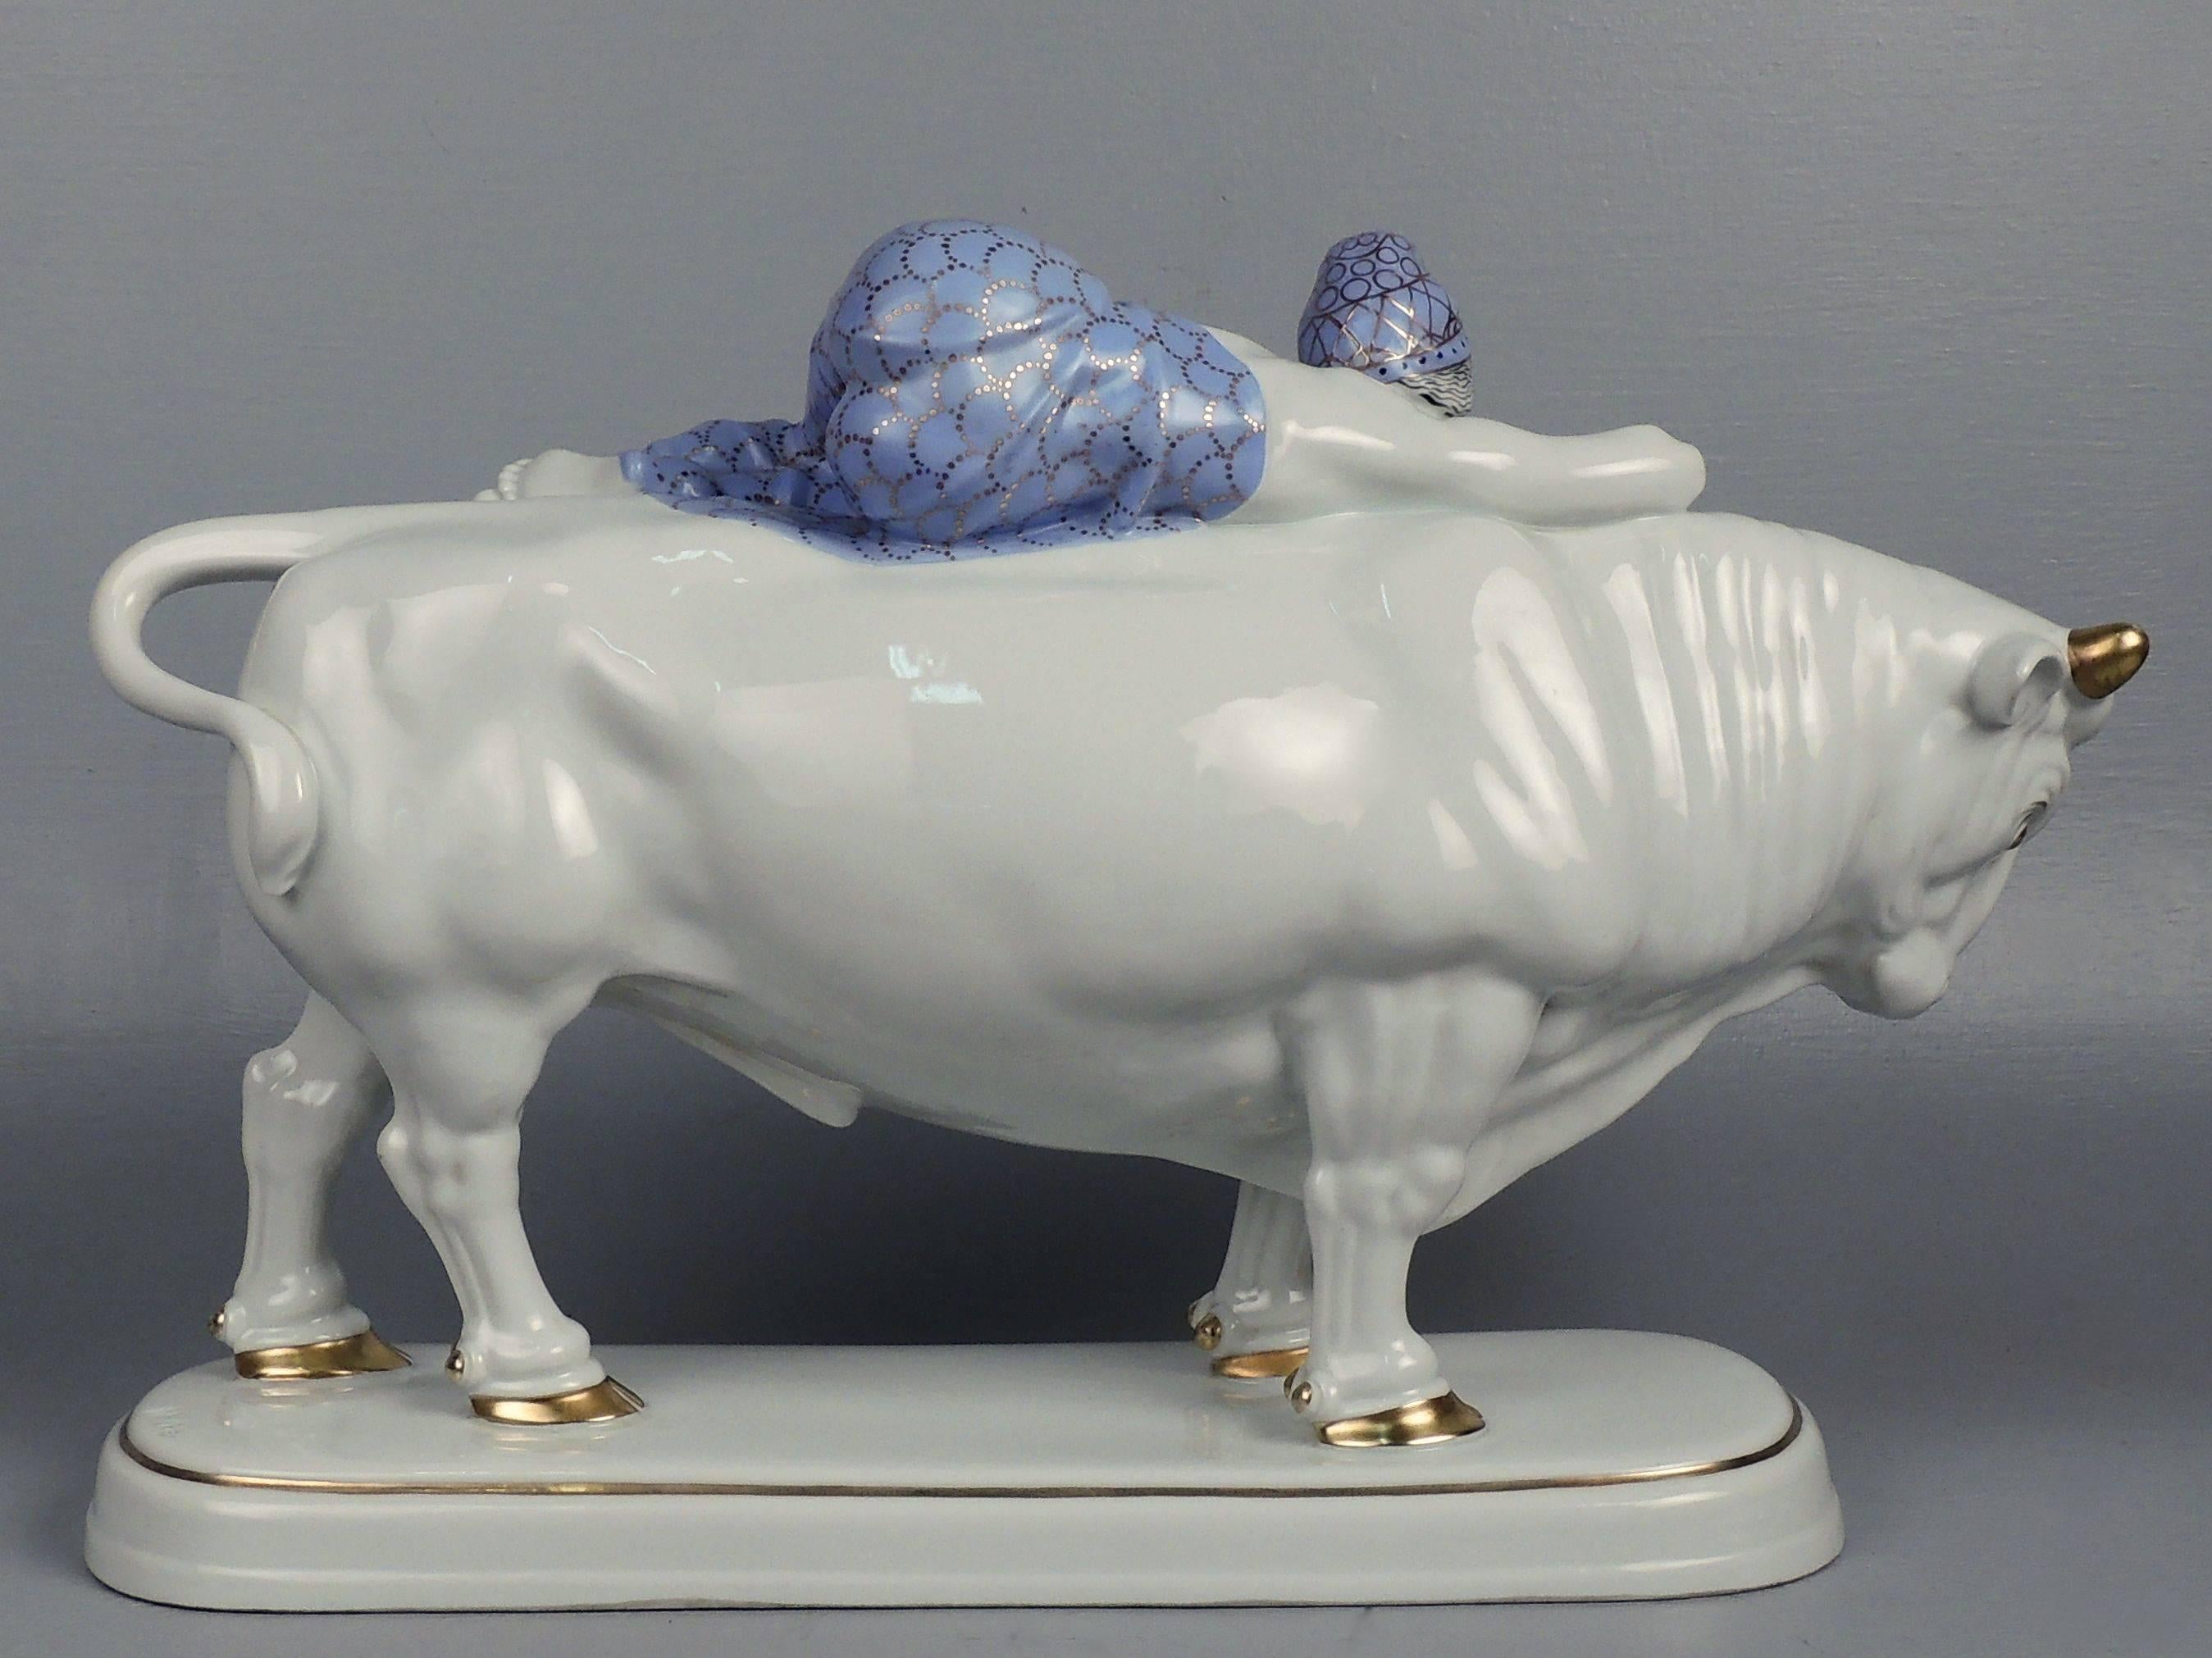 German Art Deco Fraureuth Porcelain Figurine of Europa and the Bull by Carl Nacke